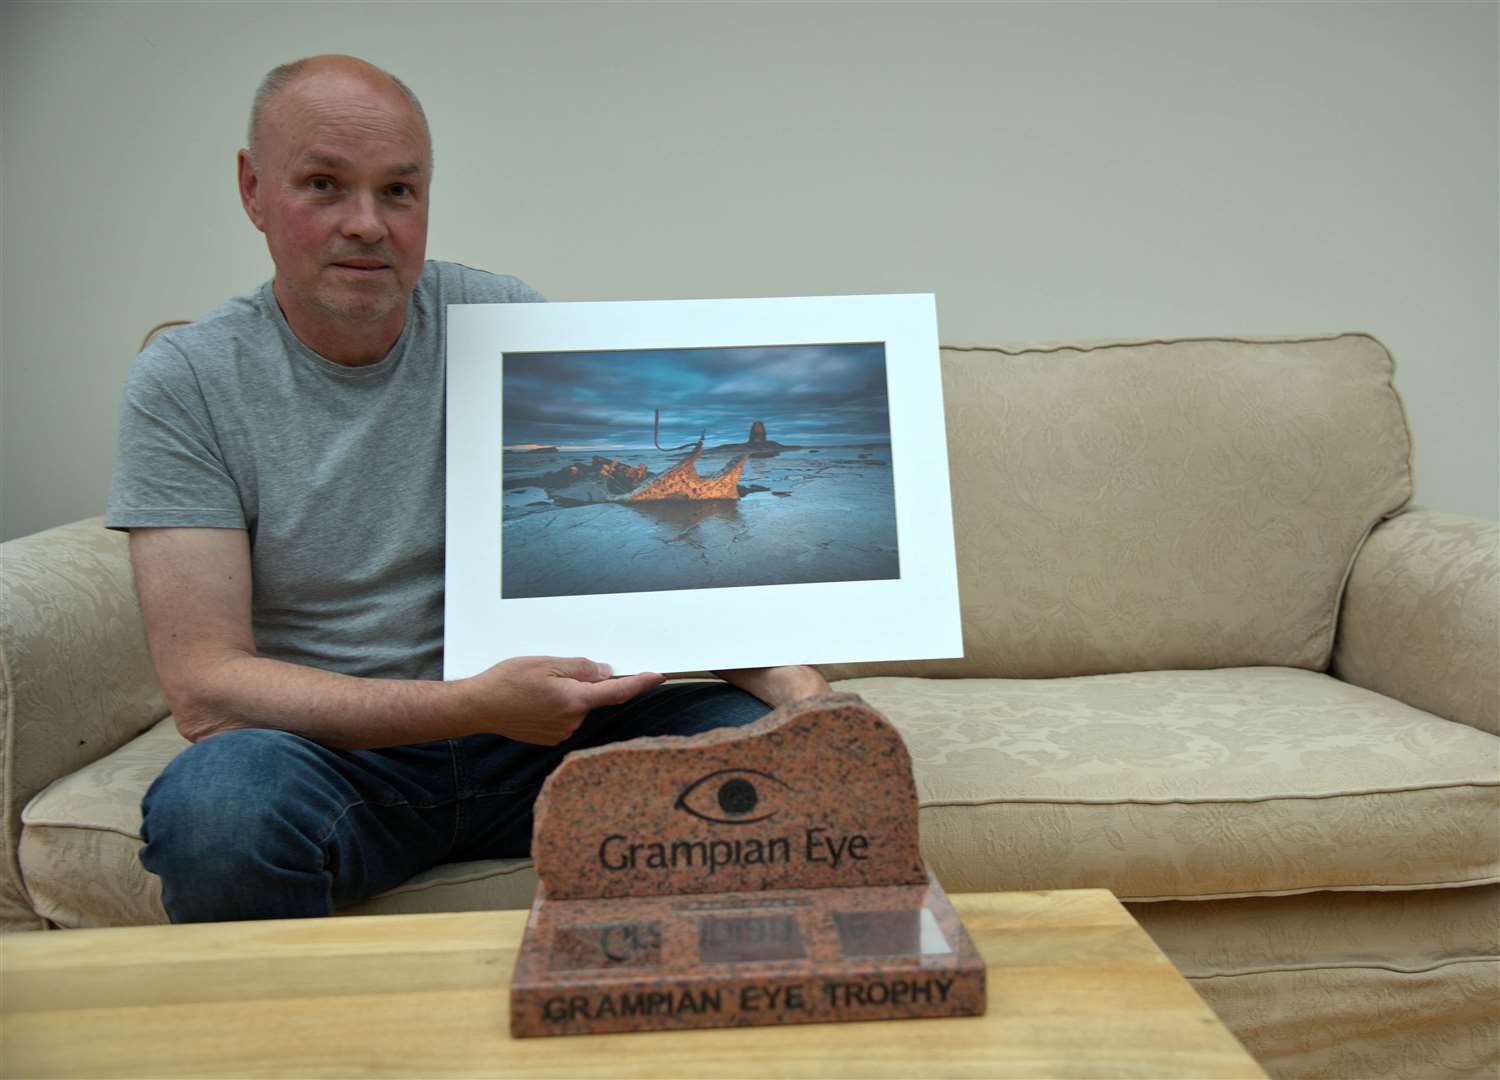 Paul Scott with the Grampian Eye Trophy